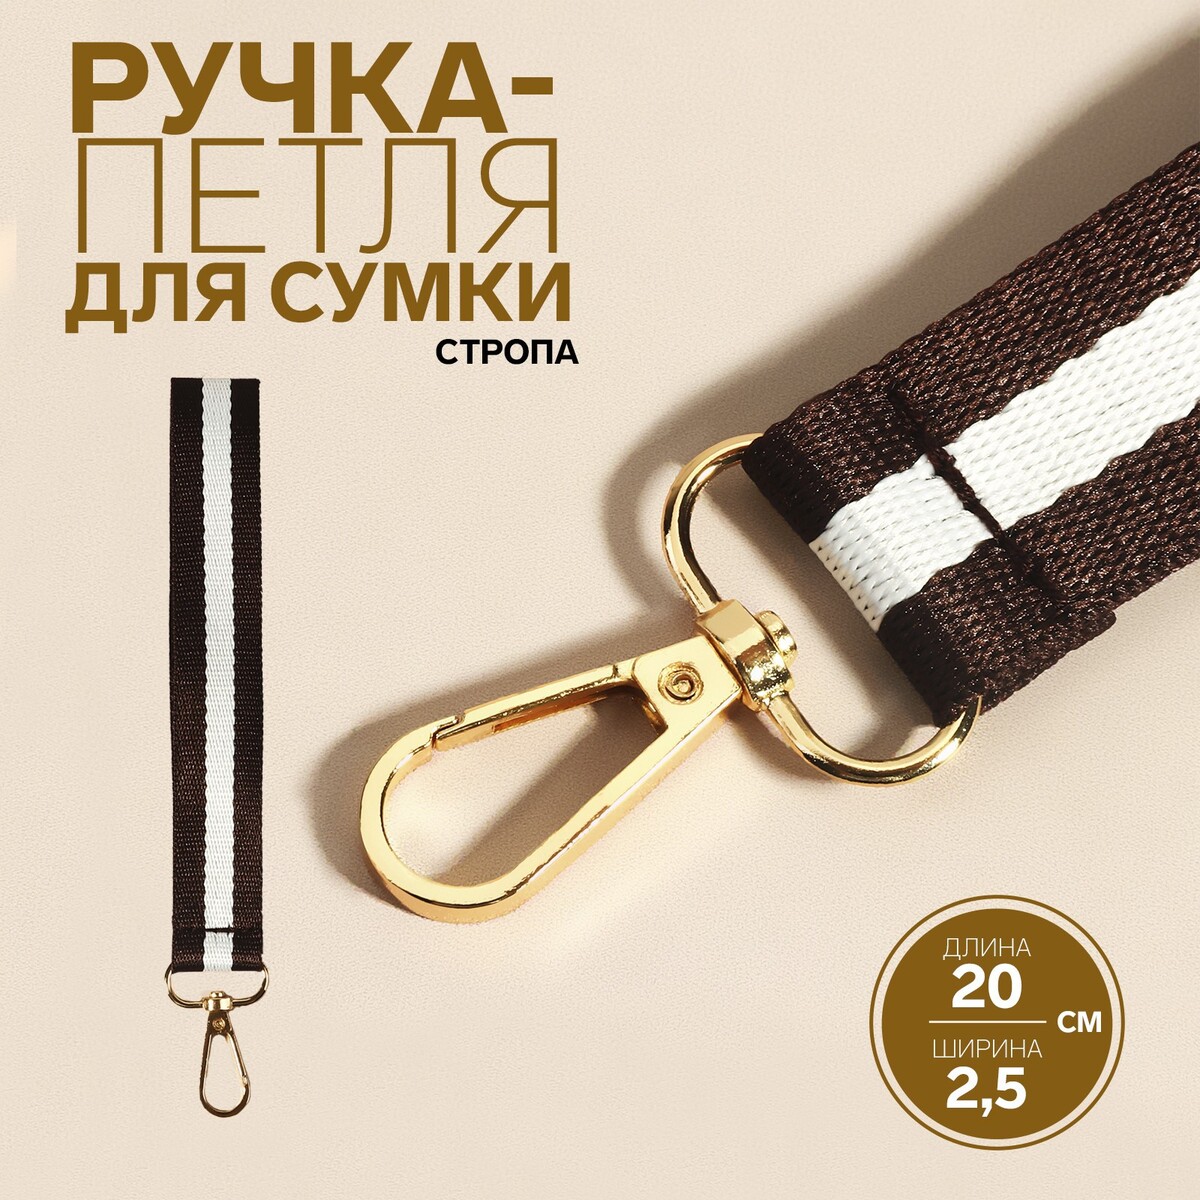 Ручка-петля для сумки, стропа, 20 × 2,5 см, цвет коричневый/белый петля для сыщика